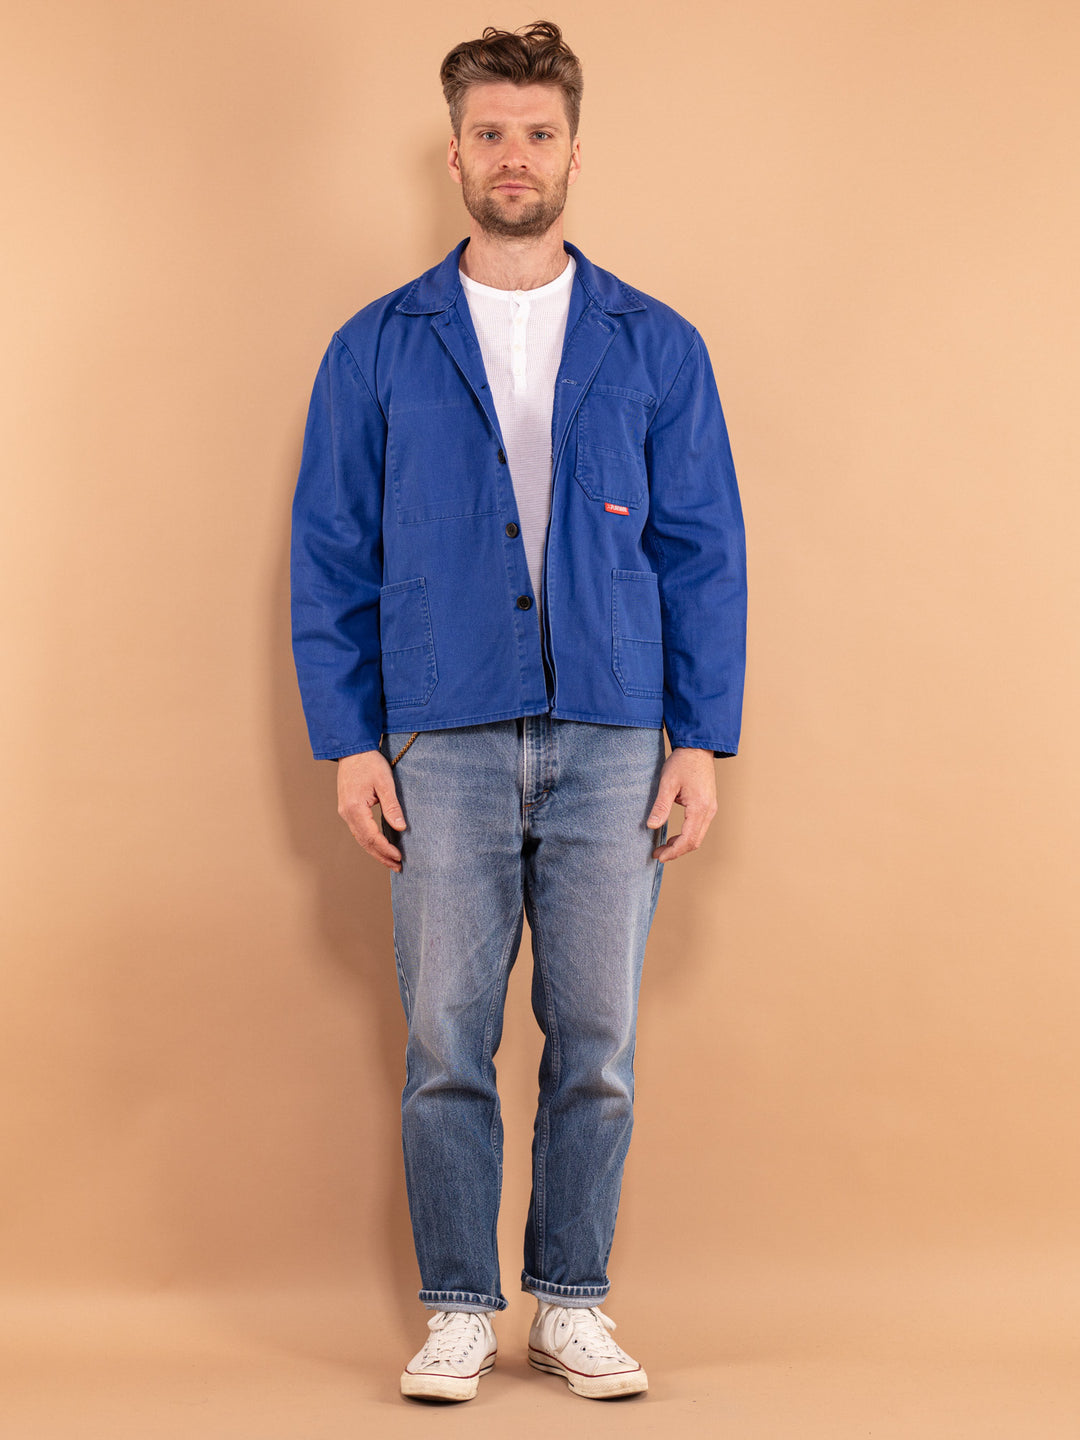 Cropped Mechanic Jacket 90s, Size L Work Jacket, Vintage Workwear, Industrial Wear, Blue Collar Jacket, Workman Denim Jacket, Utility Wear